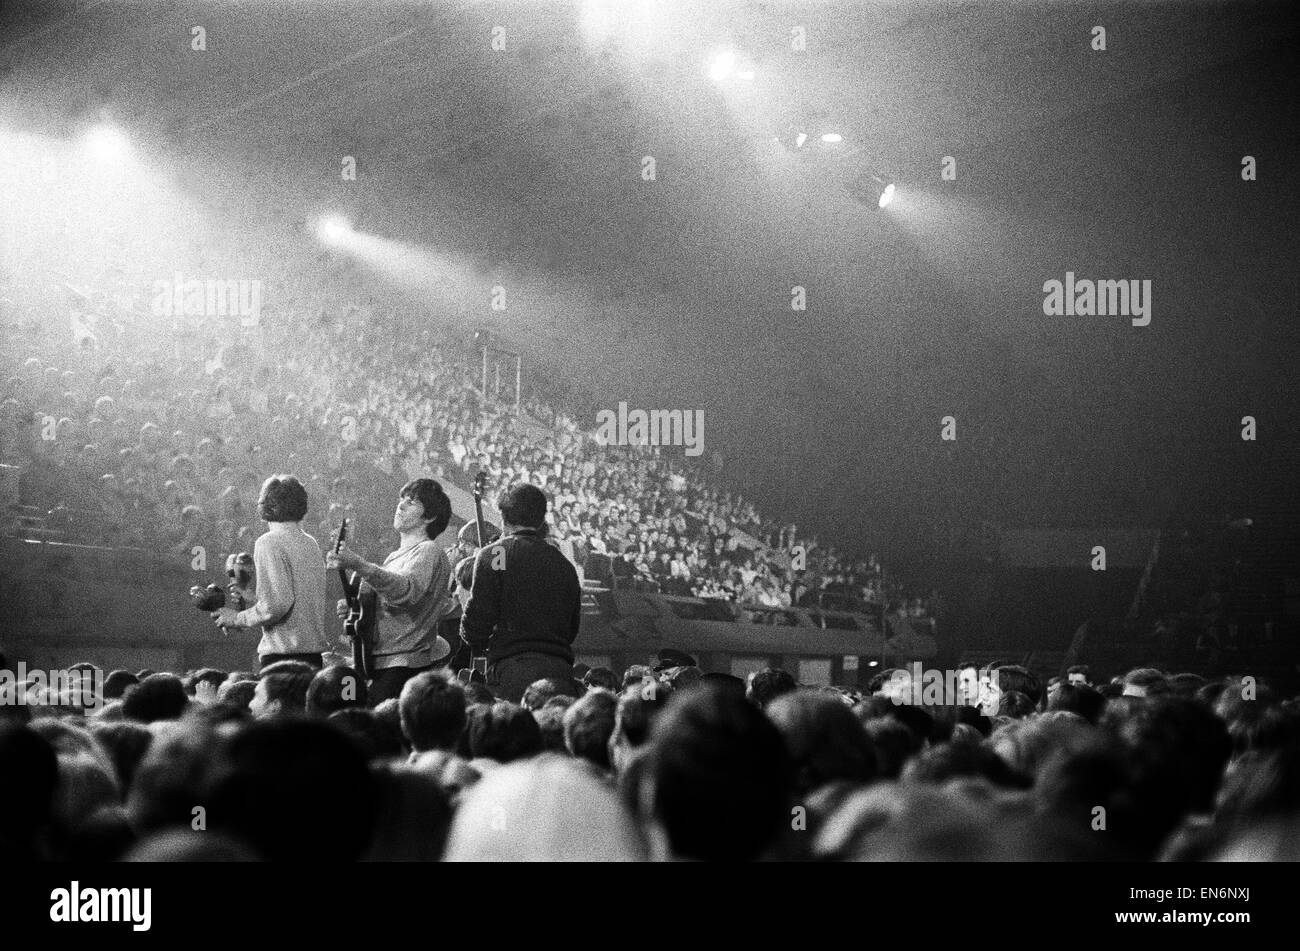 Les Rolling Stones sur scène à la Ready Steady Go Ball voir mod. 9 avril 1964. Banque D'Images